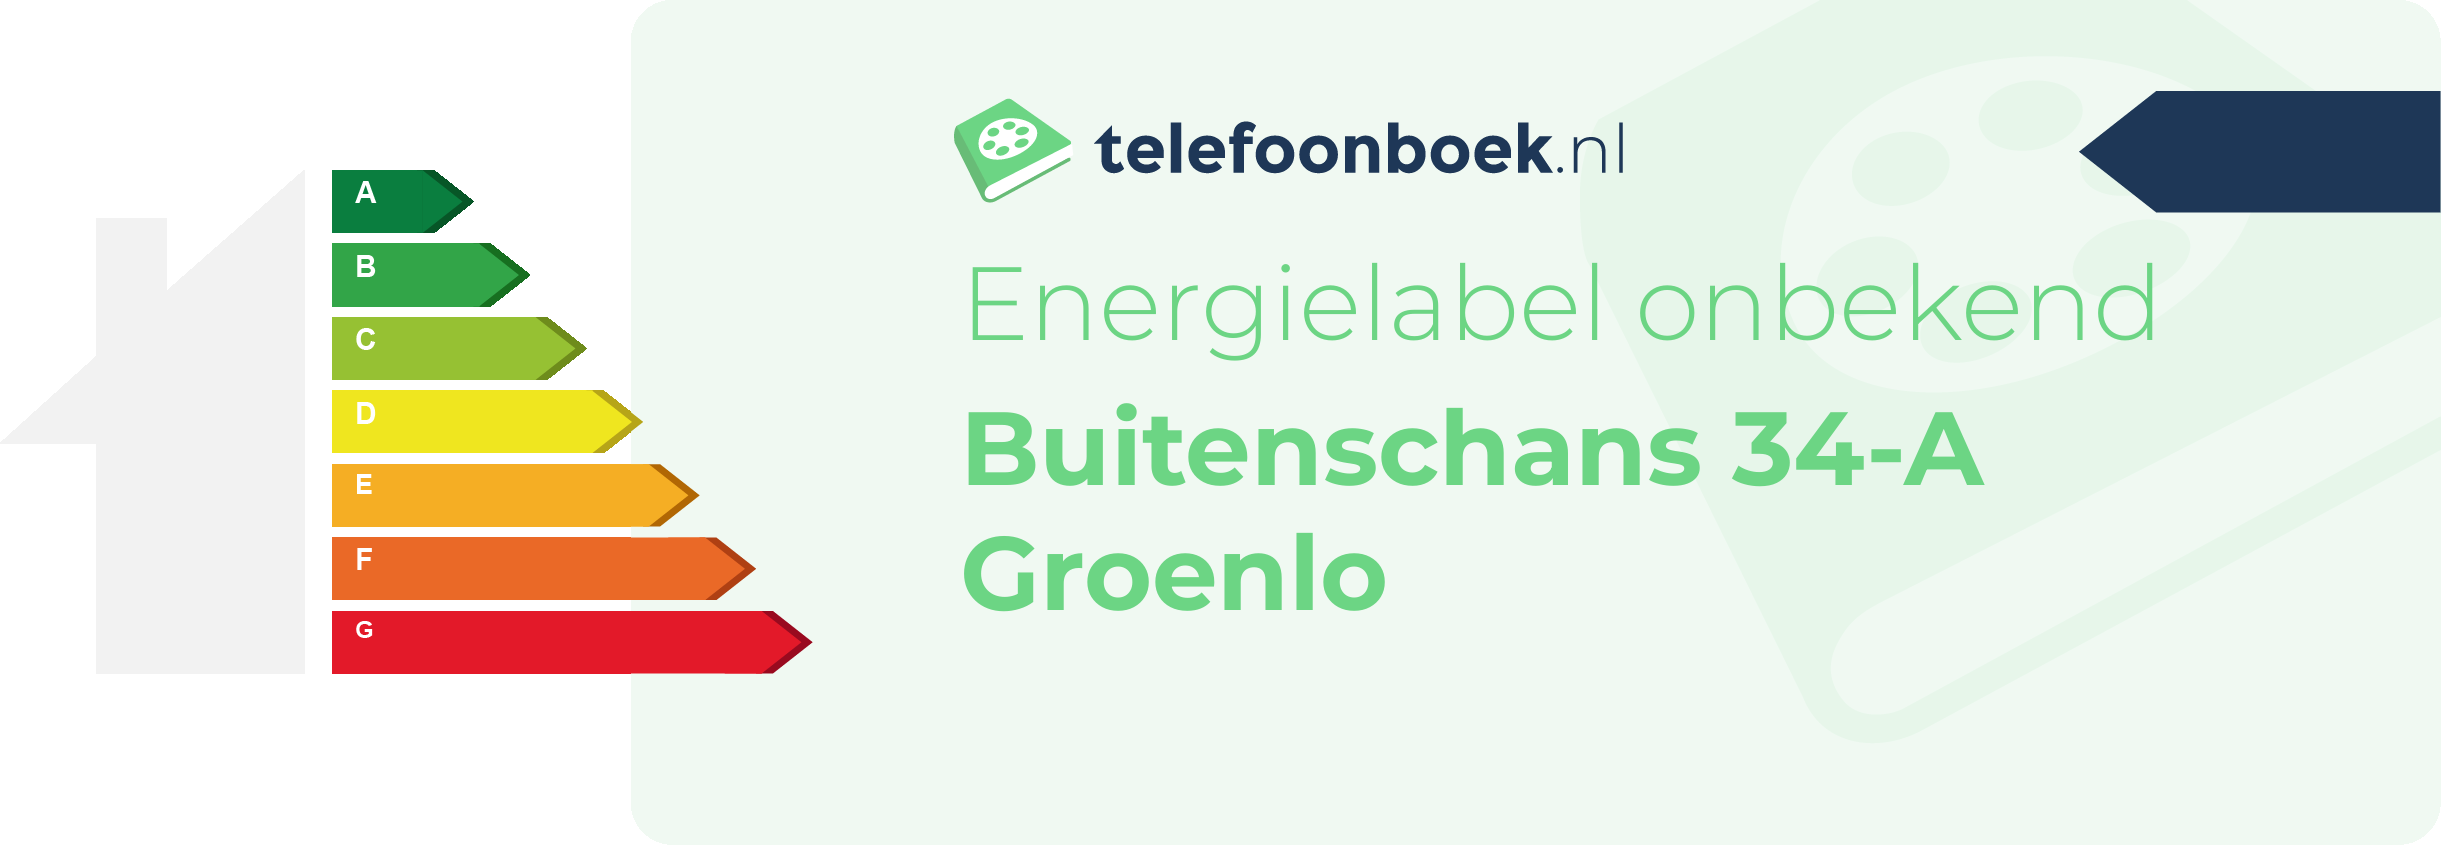 Energielabel Buitenschans 34-A Groenlo